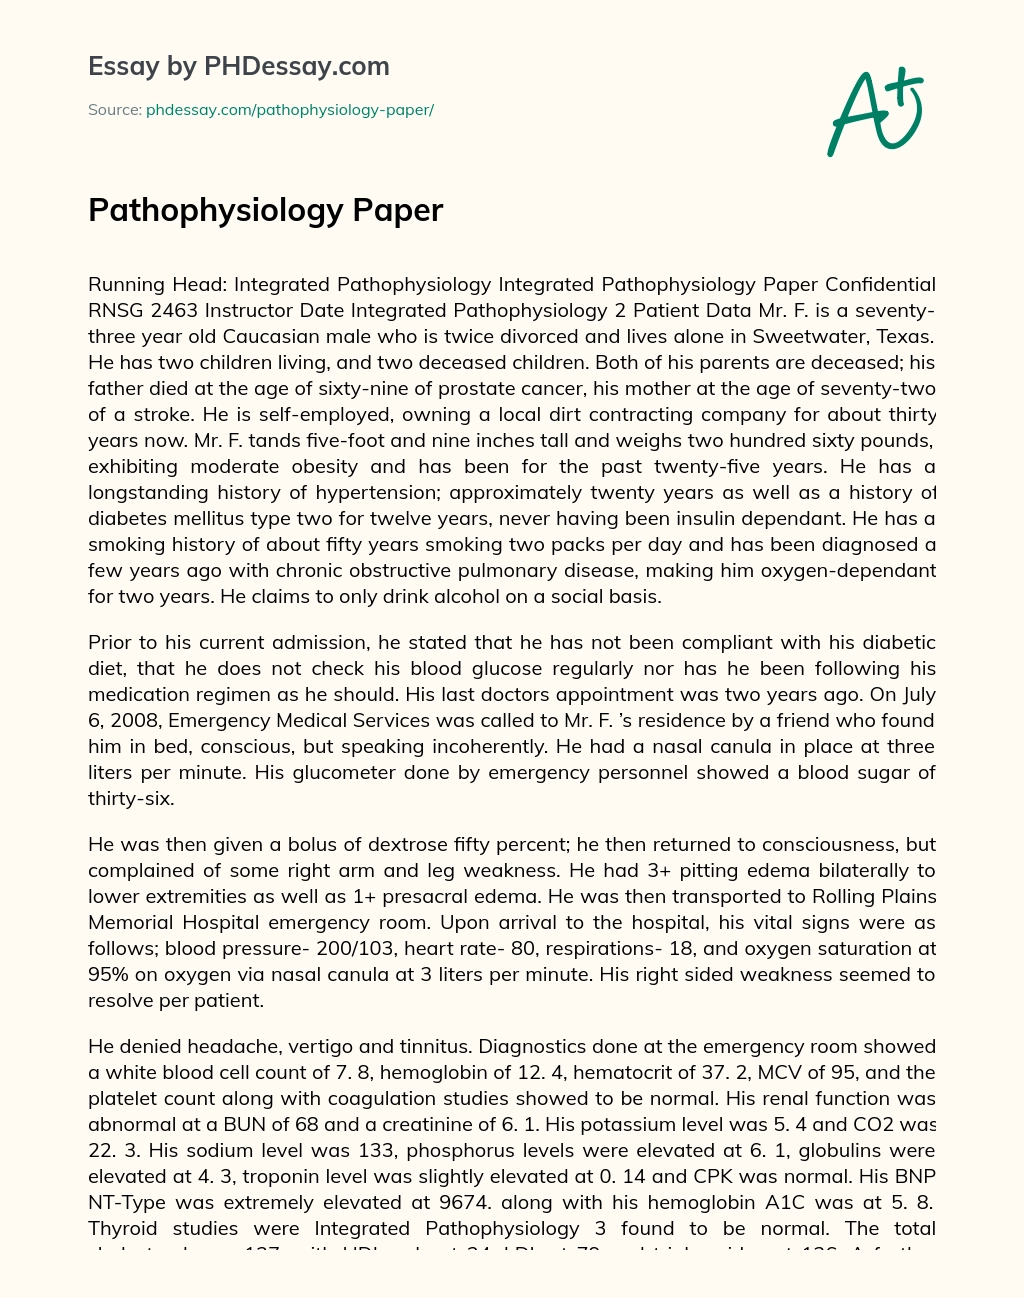 Pathophysiology Paper essay